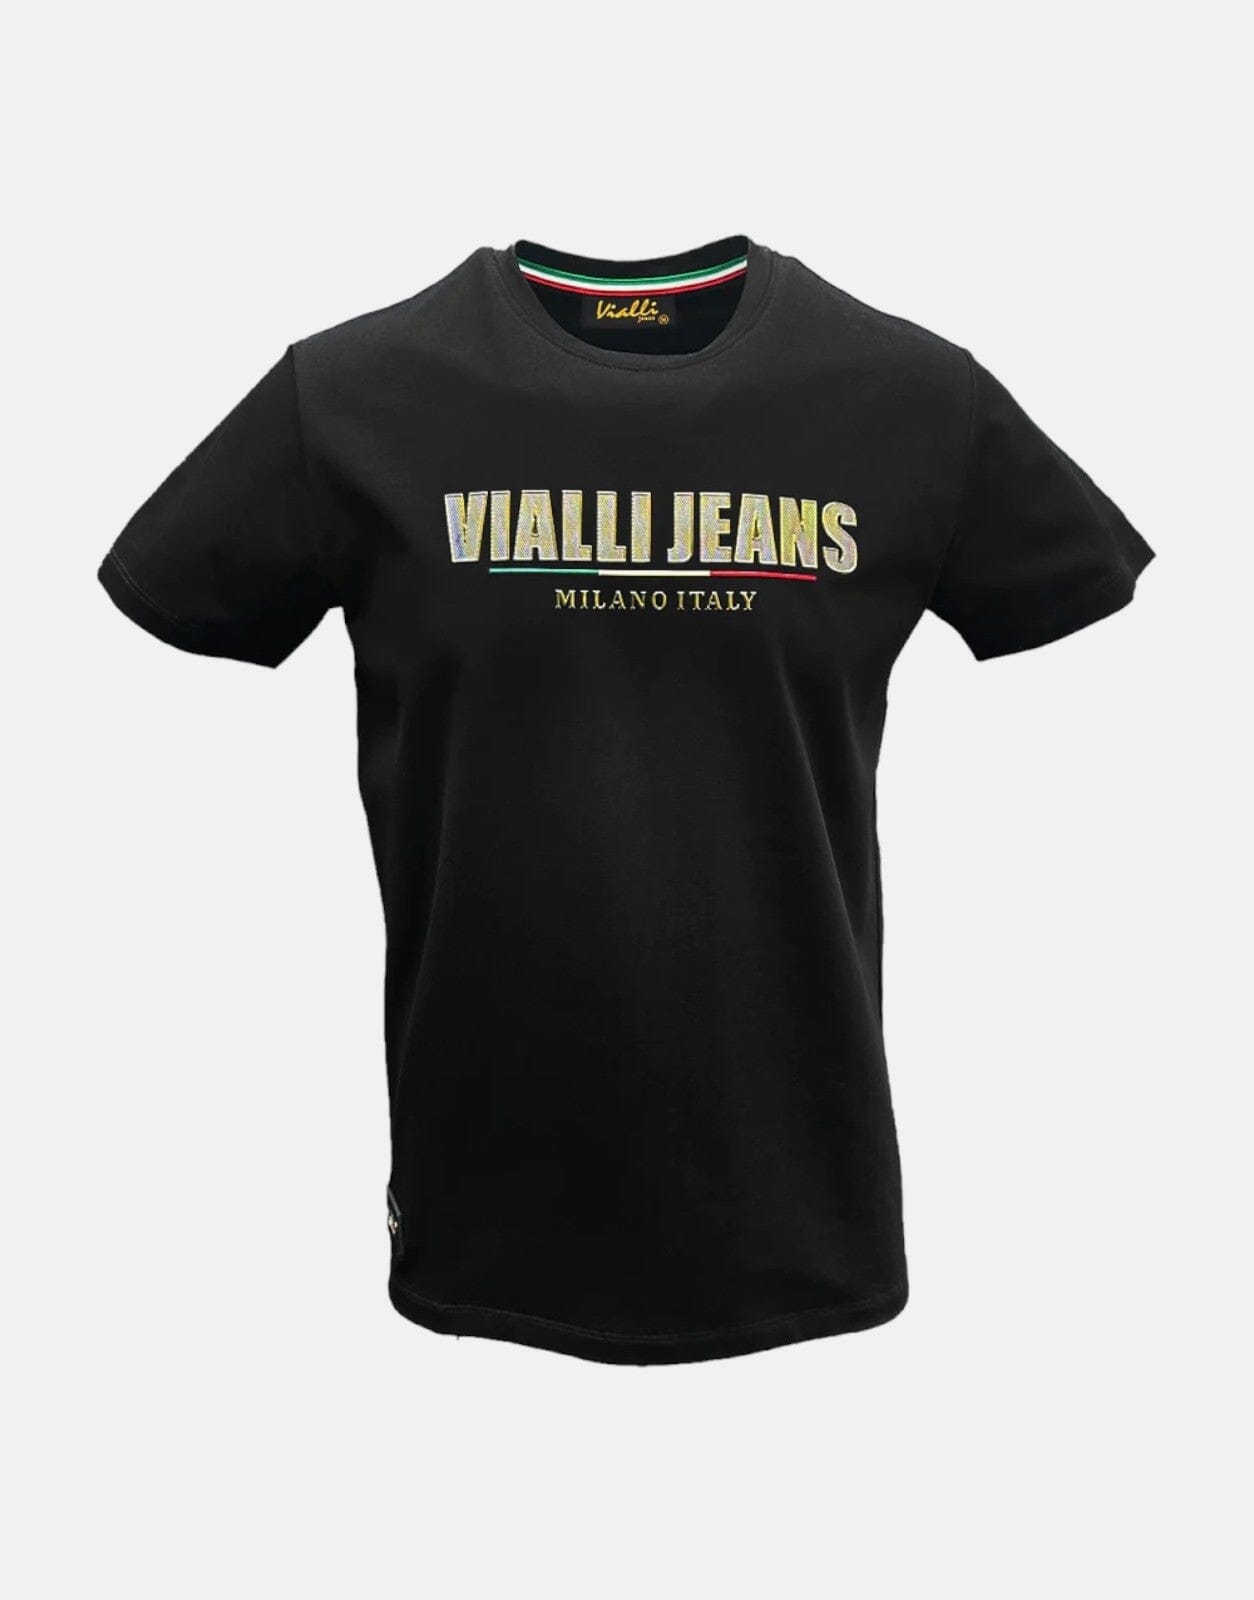 Vialli Fambani Black T-Shirt, M / Black